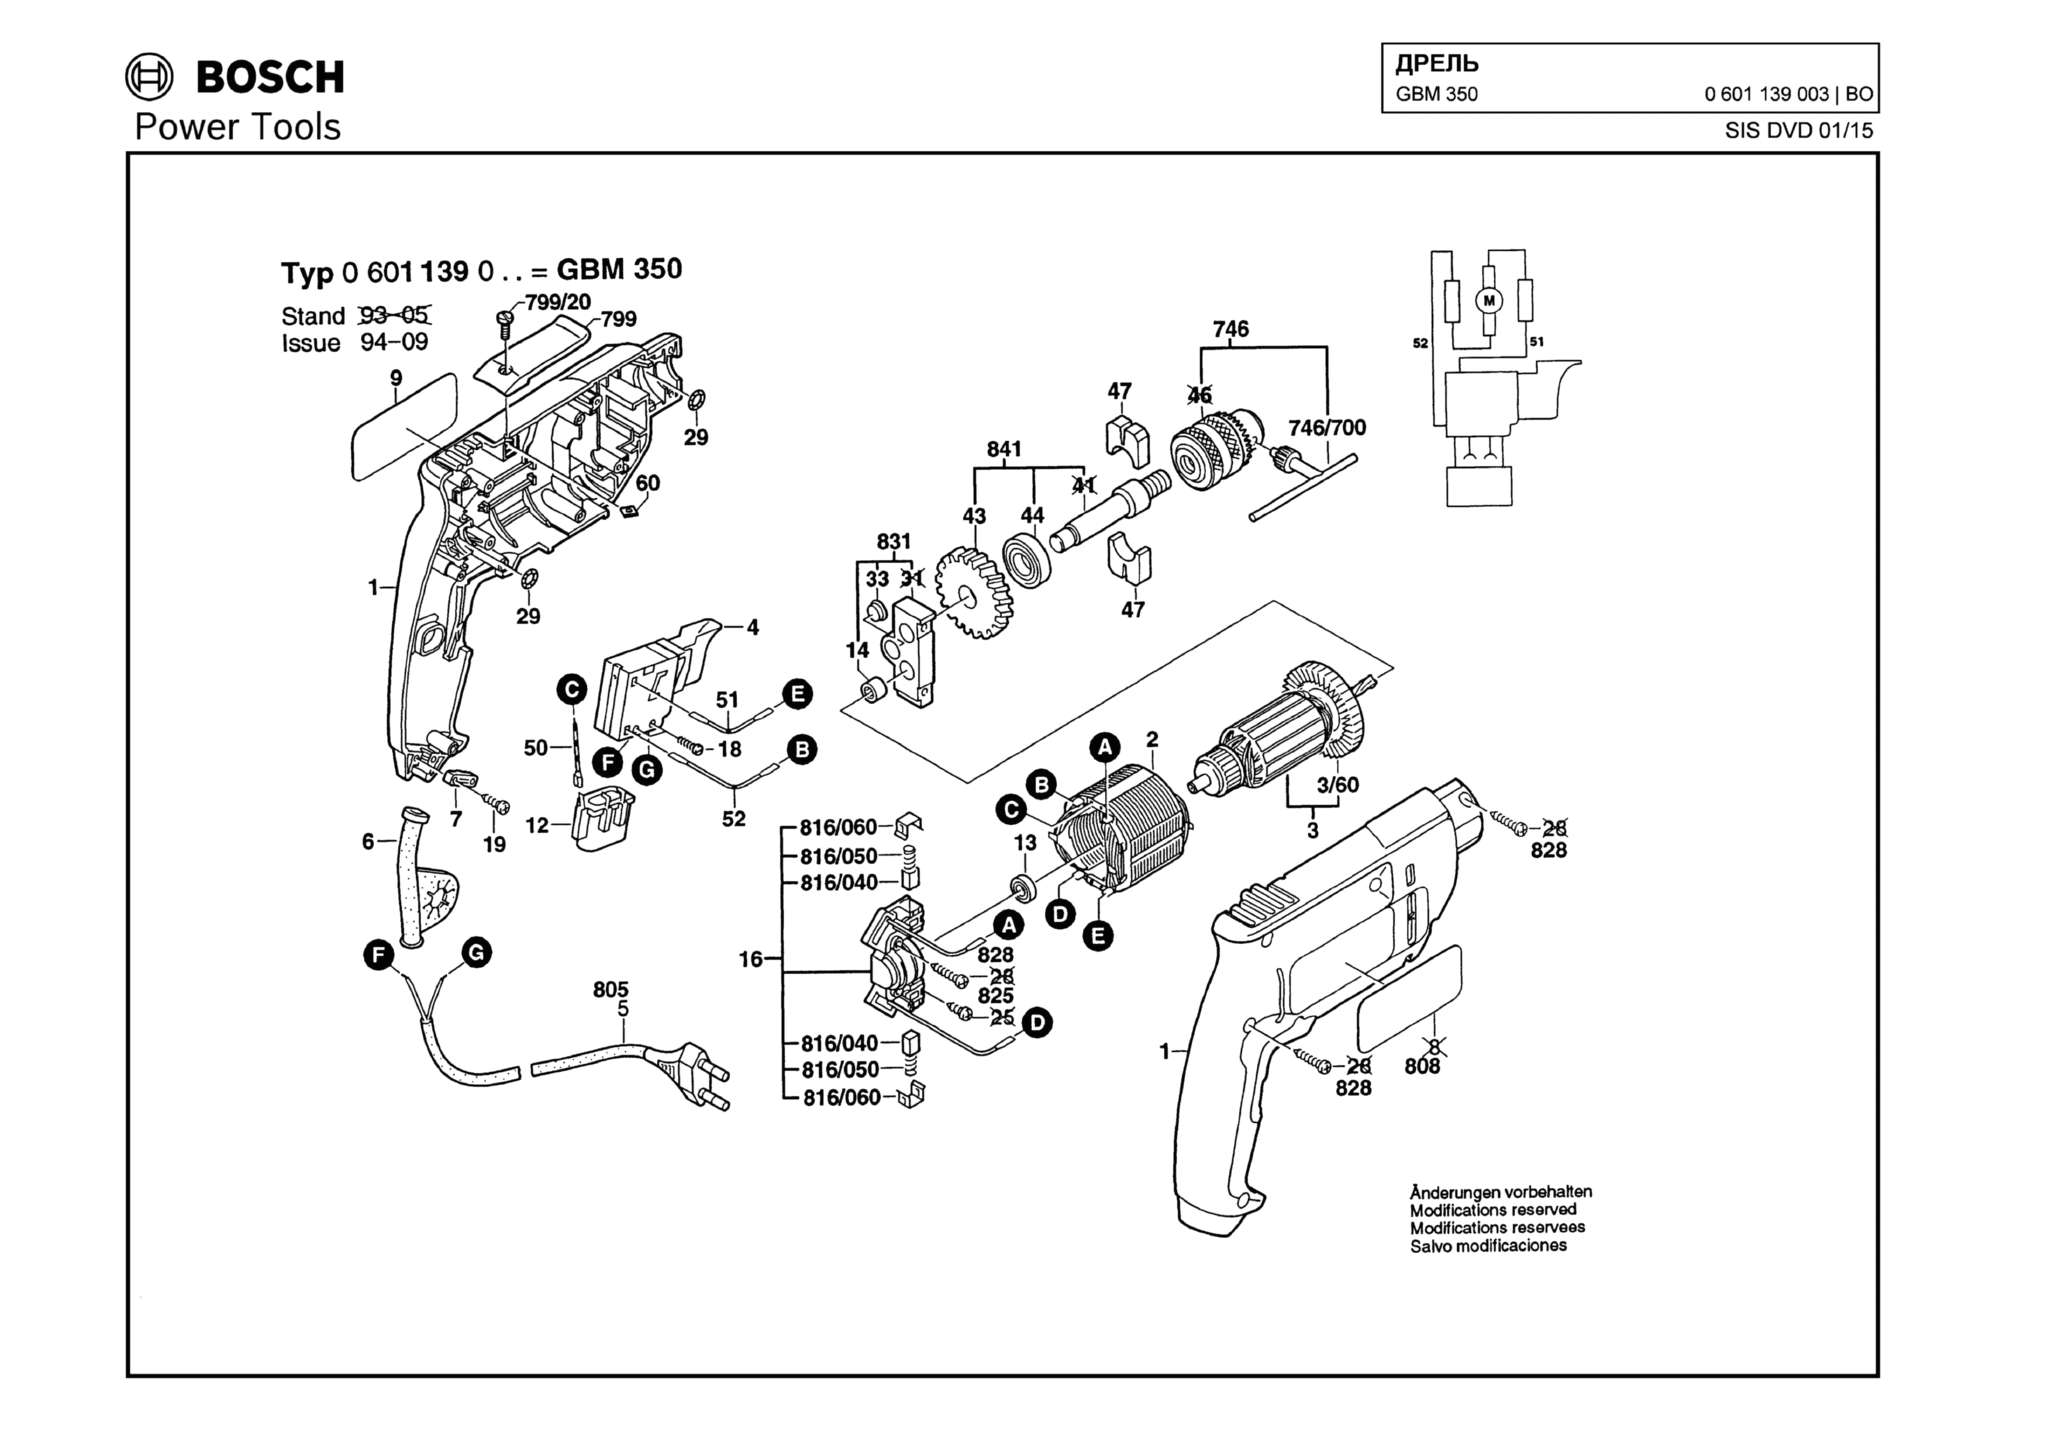 Запчасти, схема и деталировка Bosch GBM 350 (ТИП 0601139003)